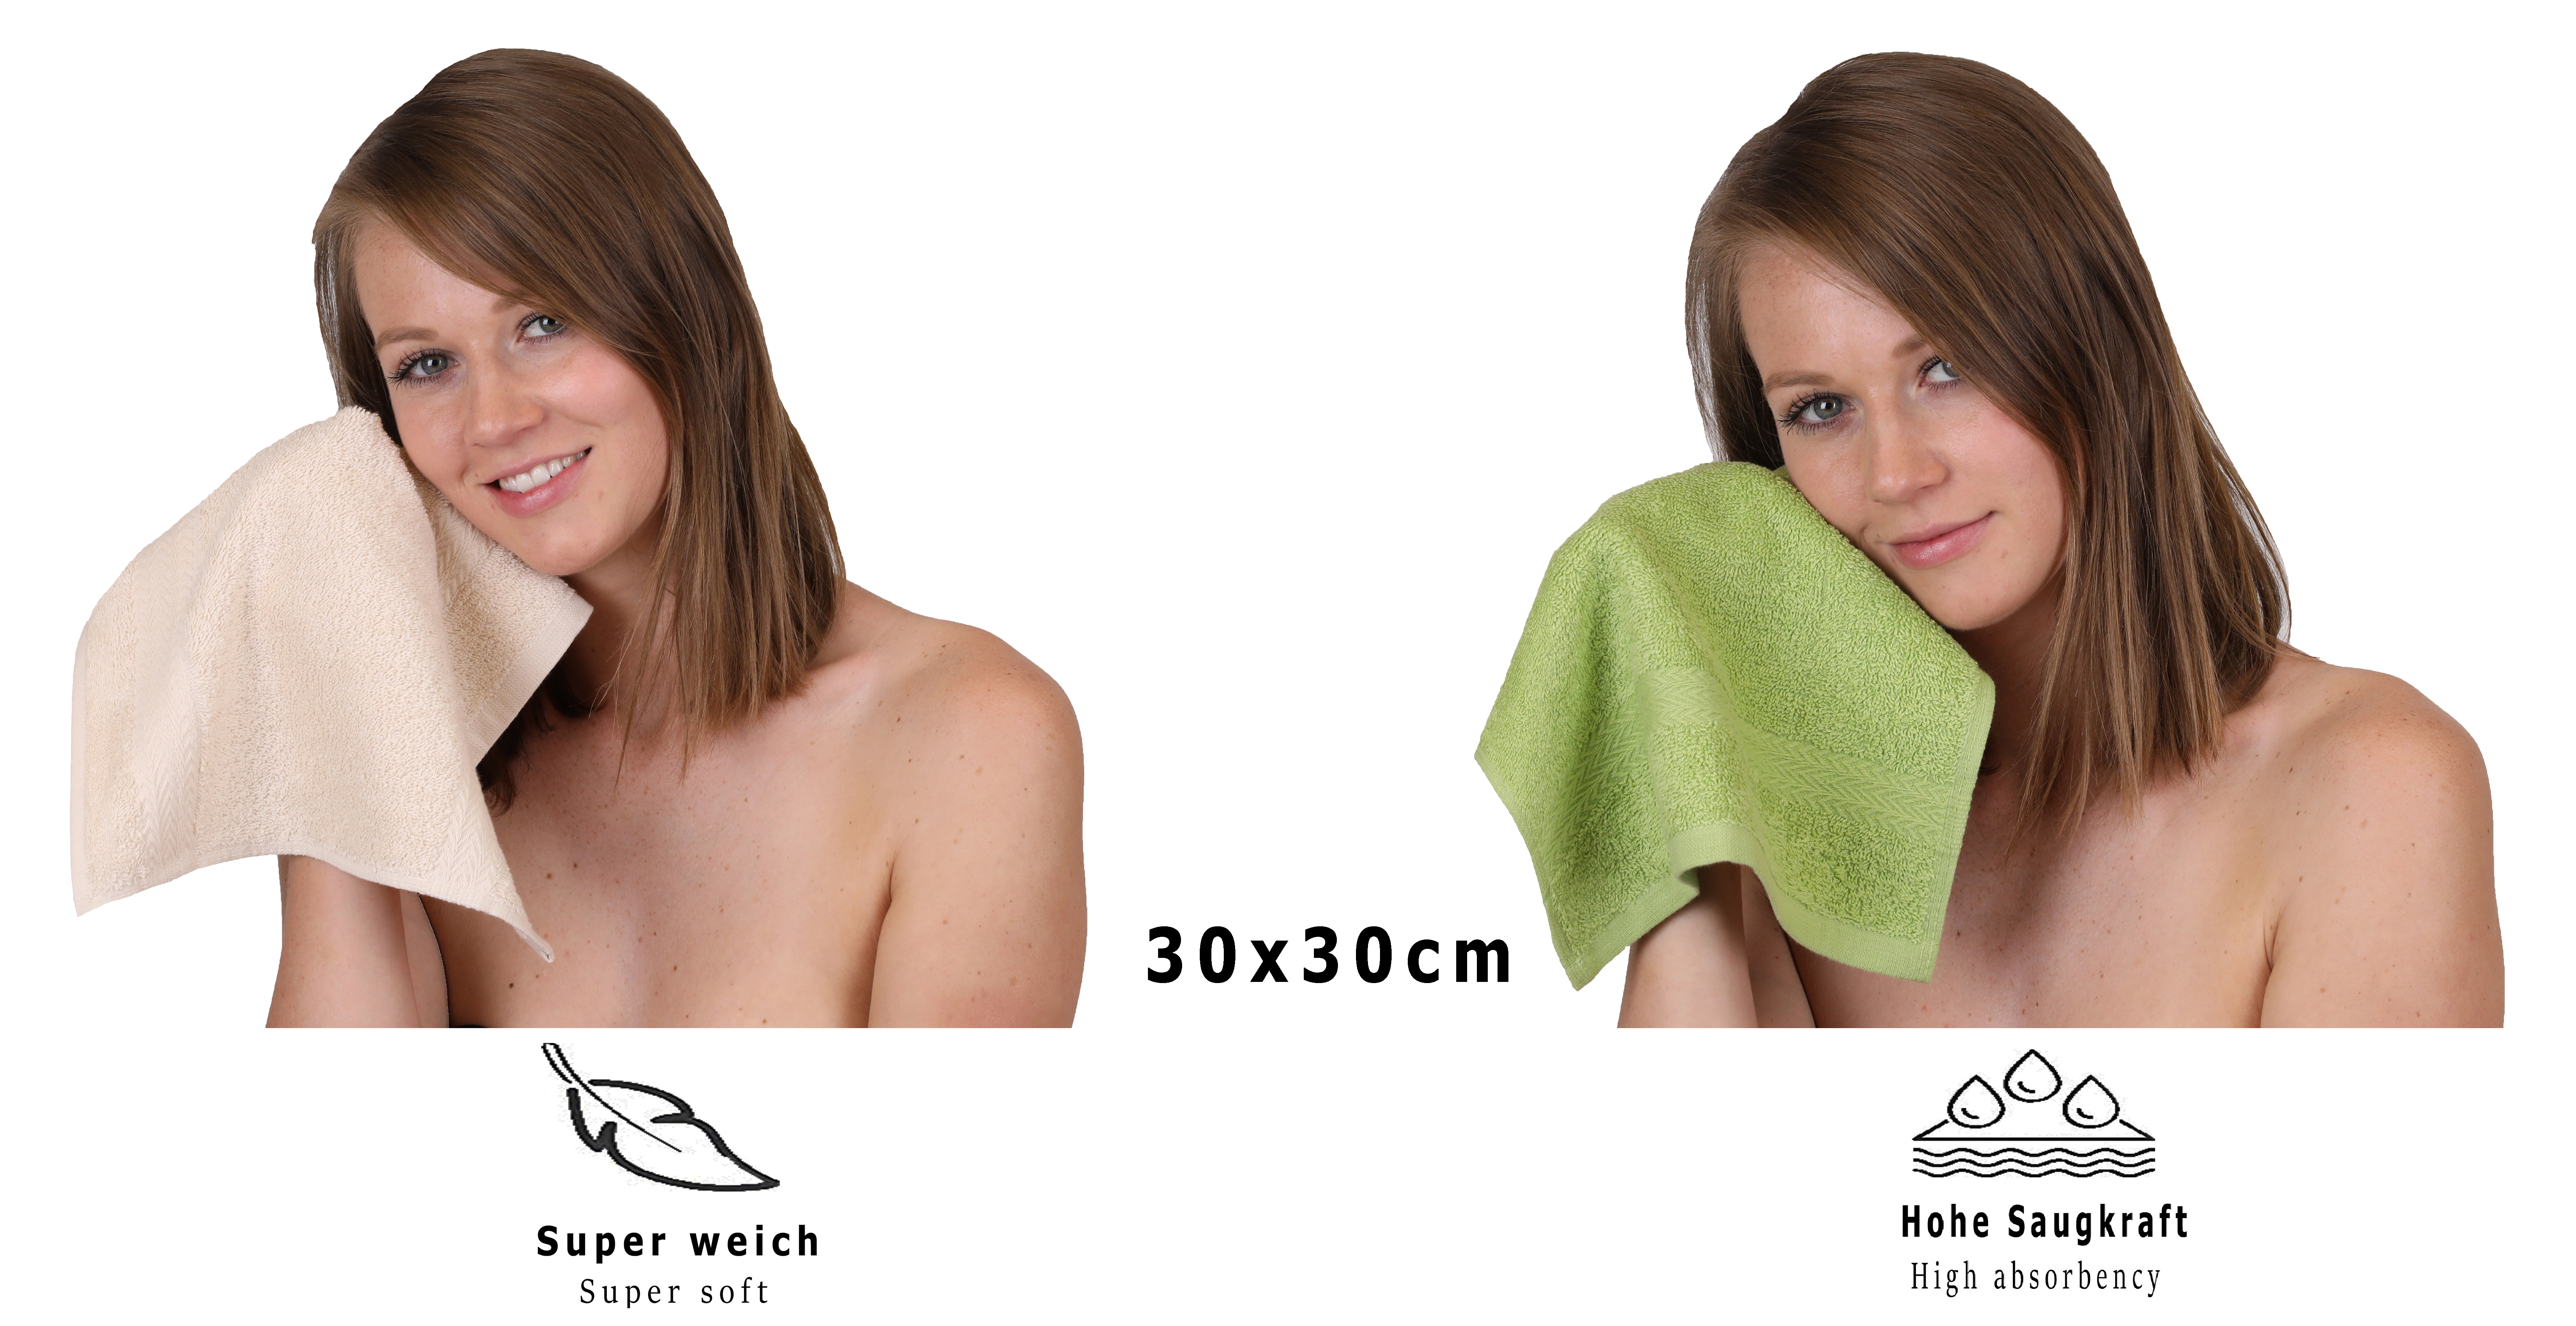 Betz 10 Lavette salvietta asciugamano per il bidet Premium 100 % cotone  misure 30 x 30